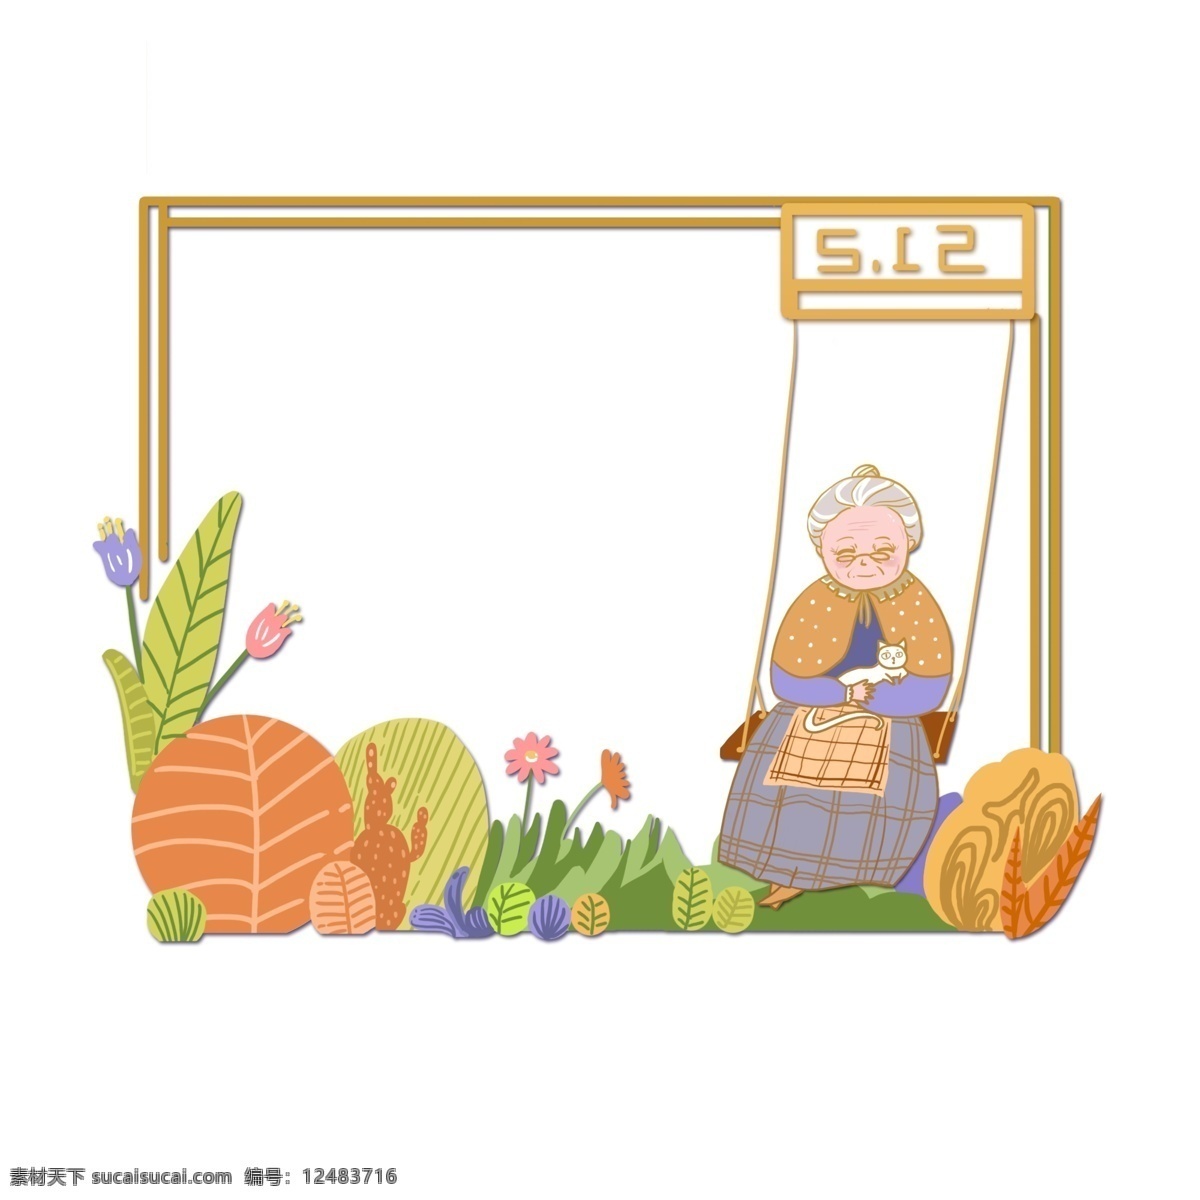 母亲节 立体 边框 边框设计 植物边框 老人边框 创意边框 橙色系 主题 应用 温馨场景应用